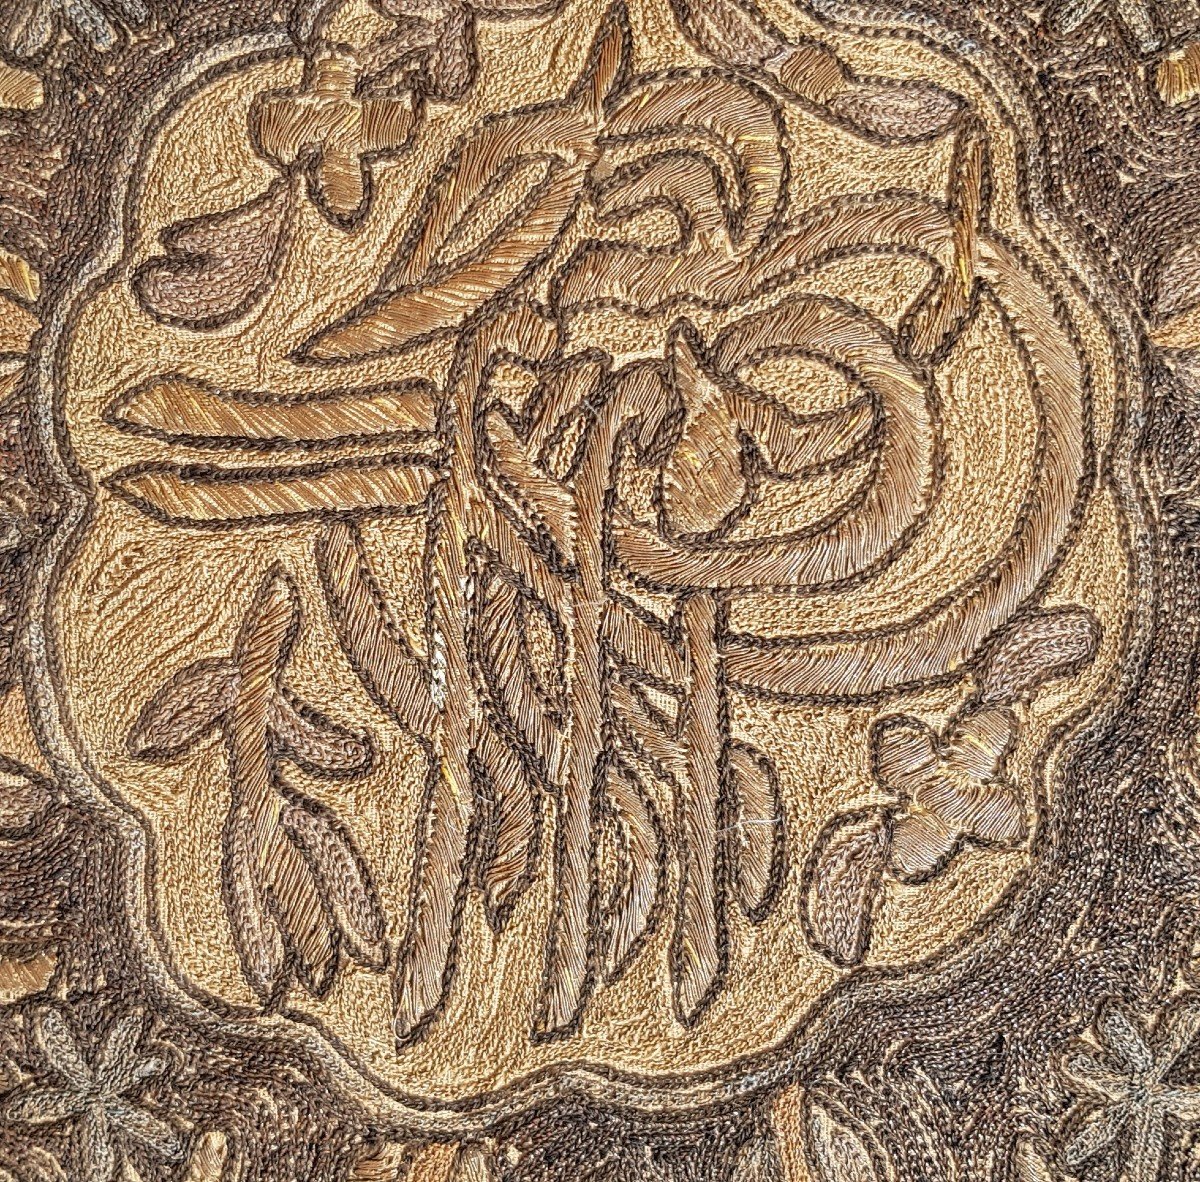 Cuscino islamico antico ricamato a mano con fili metallici 